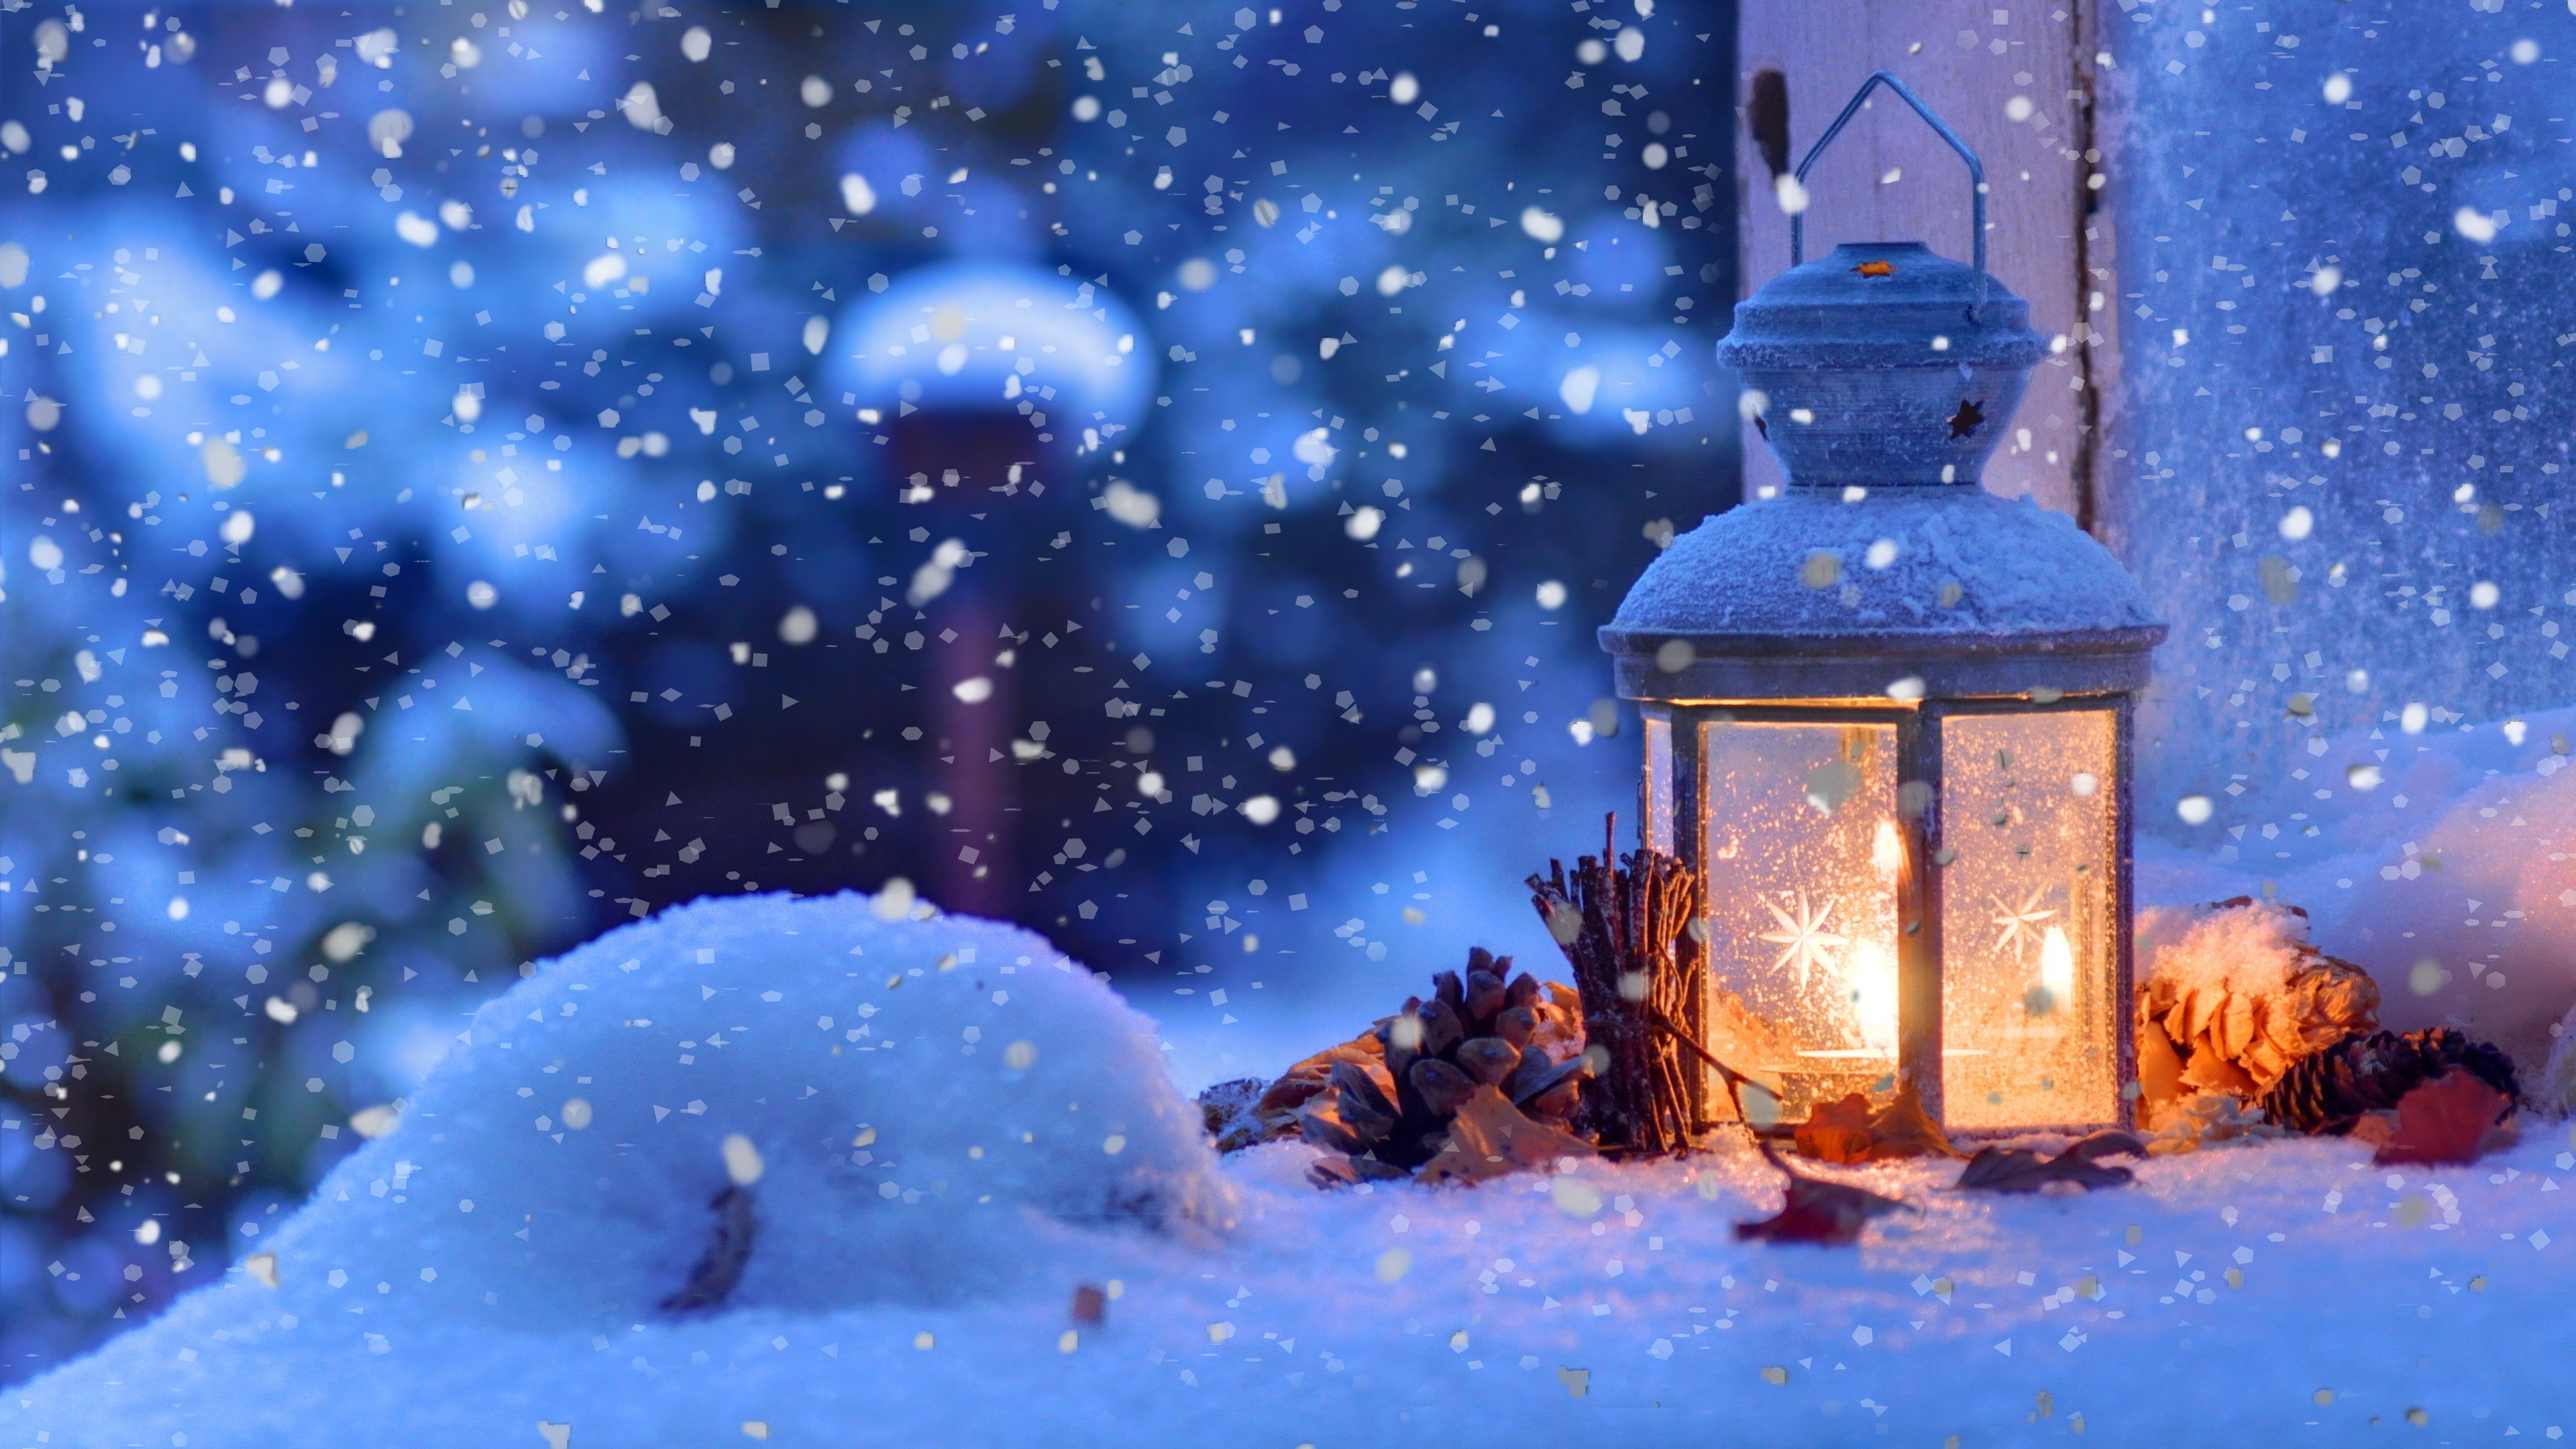 3840x2160 Christmas Snow Lantern 4K Ultra HD Desktop Wallpaper Uploaded by  DesktopWalls